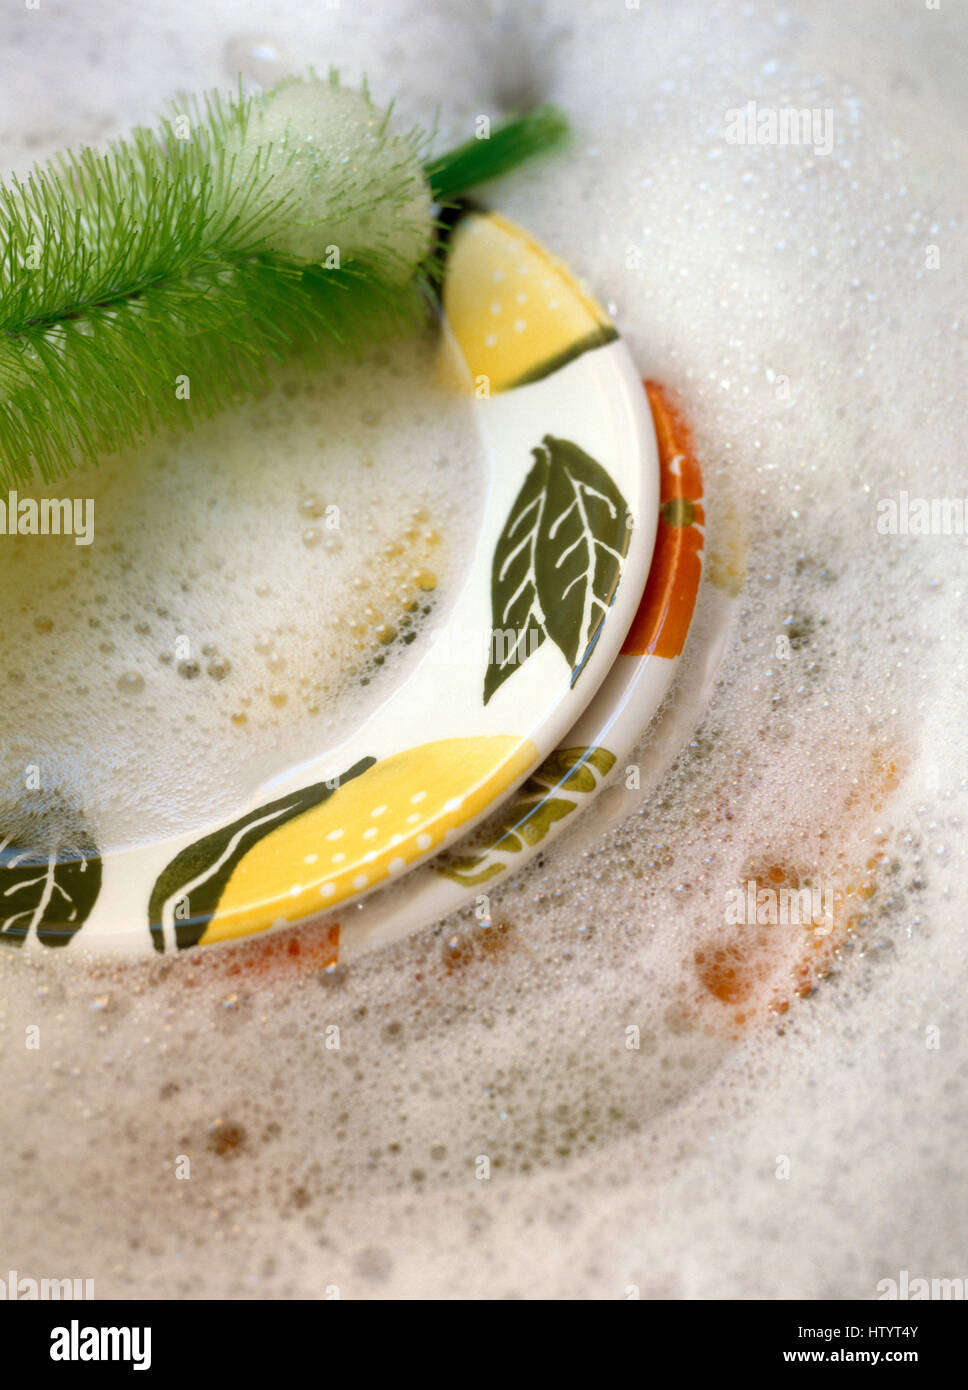 Close-up del dipinto a mano le piastre in un lavaggio fino ciotola con schiuma di sapone e un verde spazzola per lavare i piatti Foto Stock